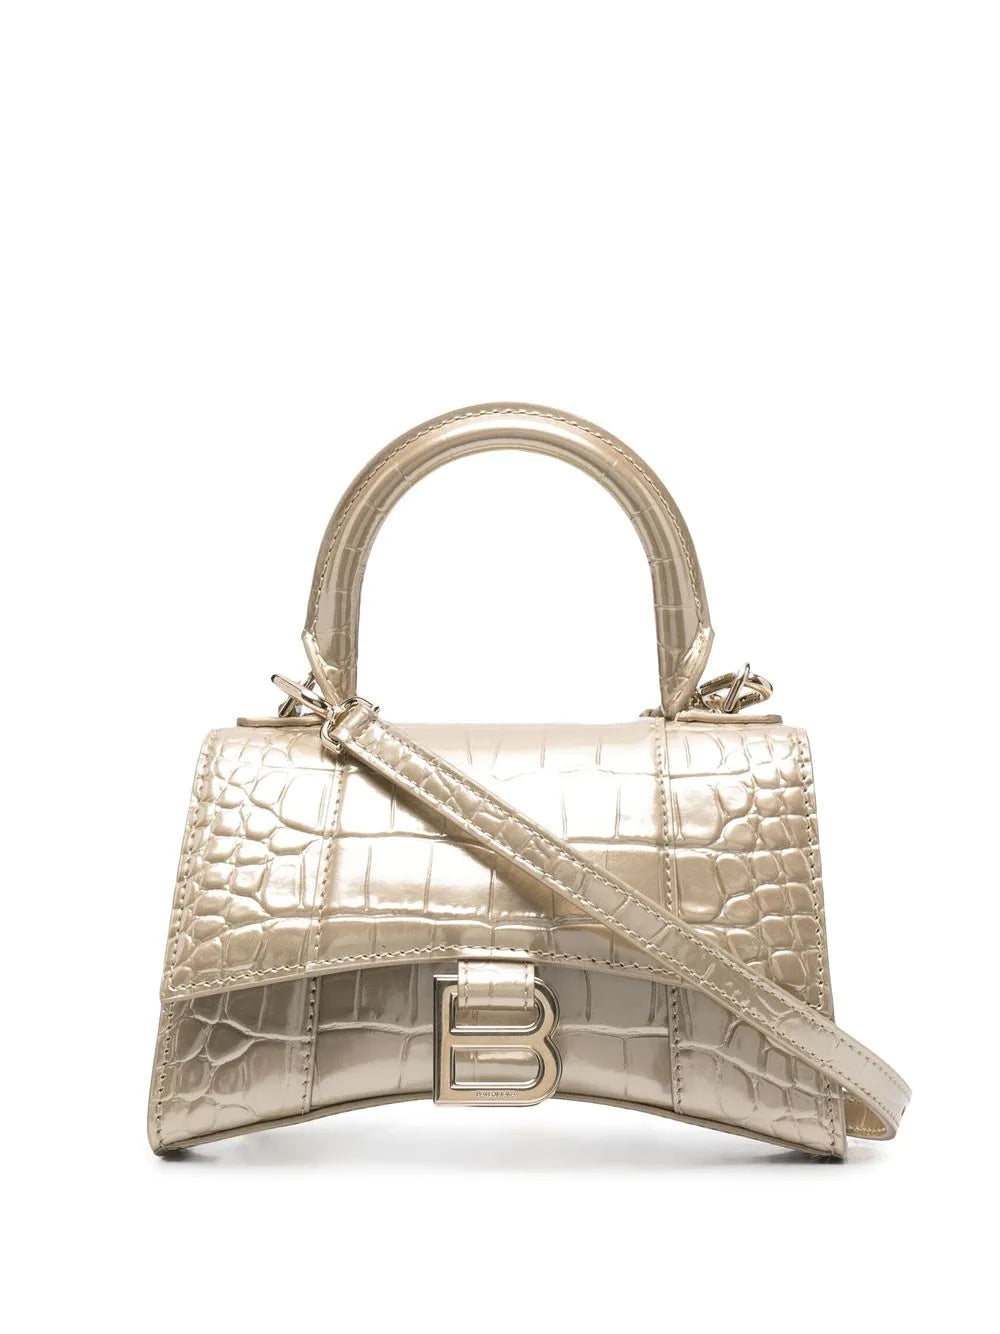 Balenciaga Hourglass XS CrocodileEmbossed Top Handle Bag  Neiman Marcus